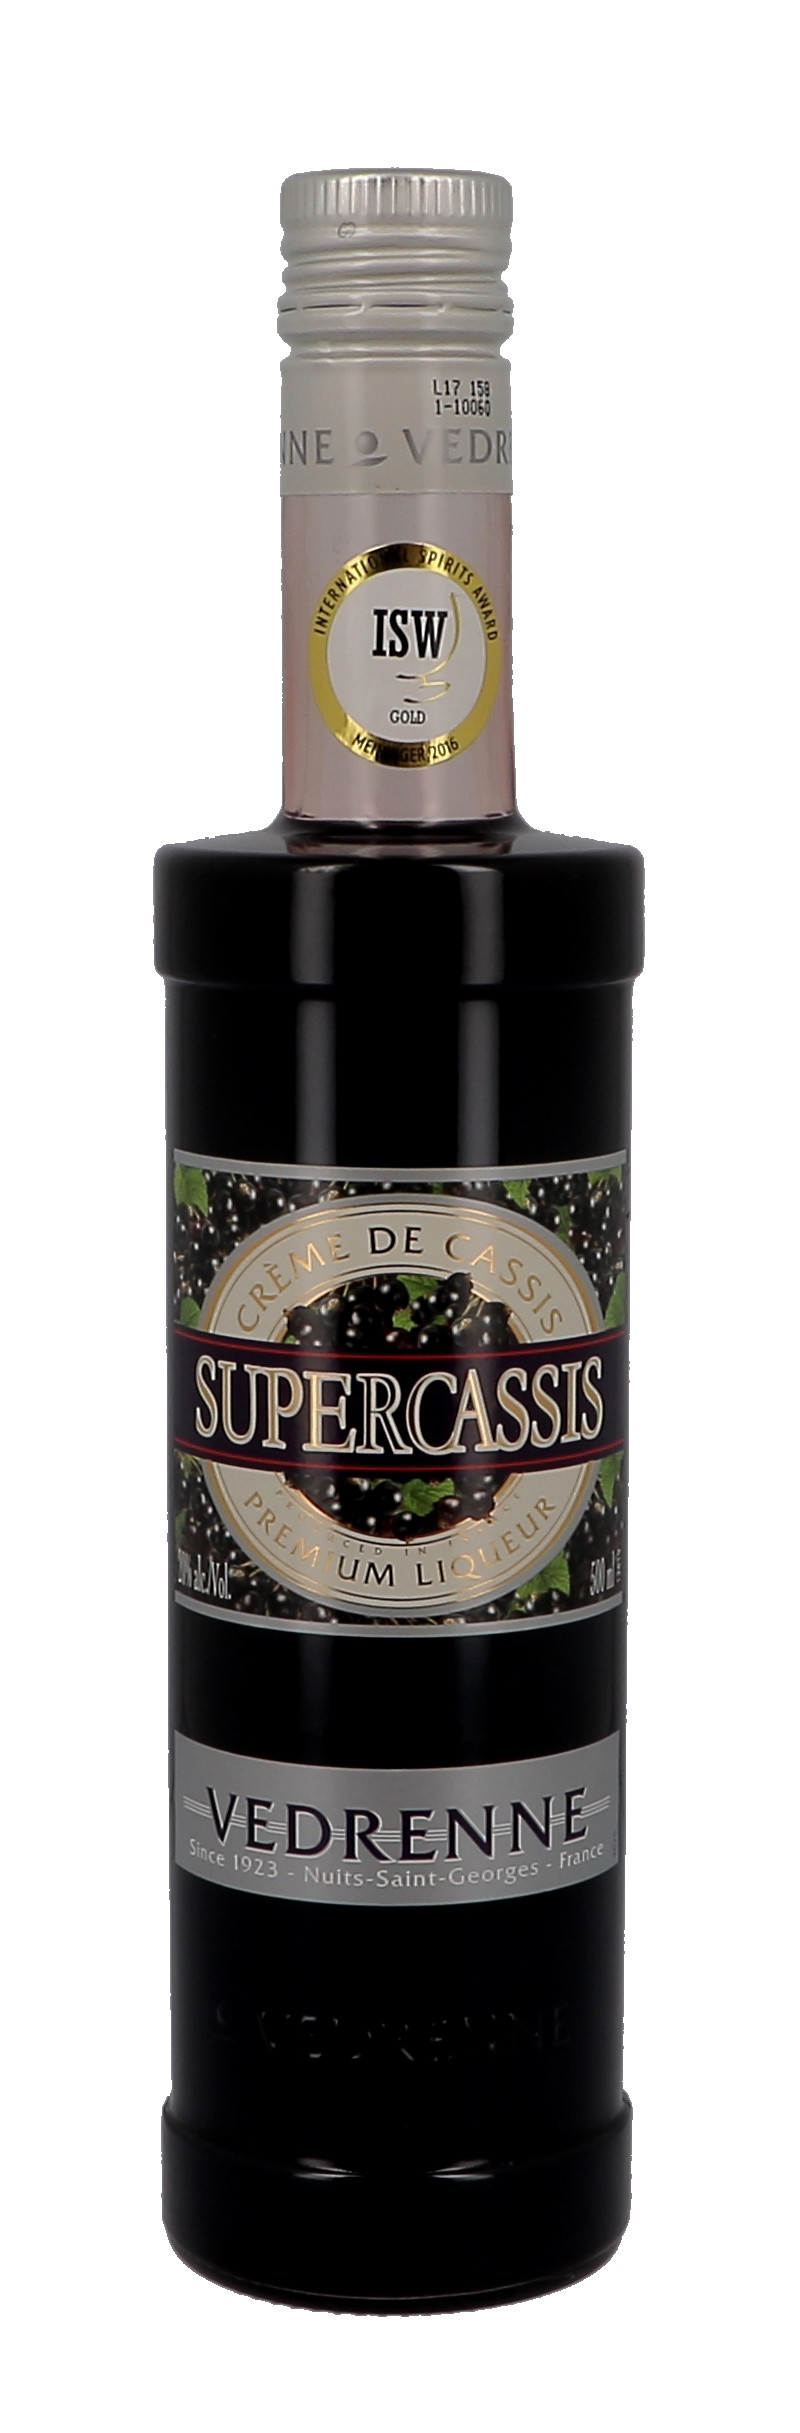 Vedrenne Supercassis Creme de Cassis 50cl 20% Liqueur